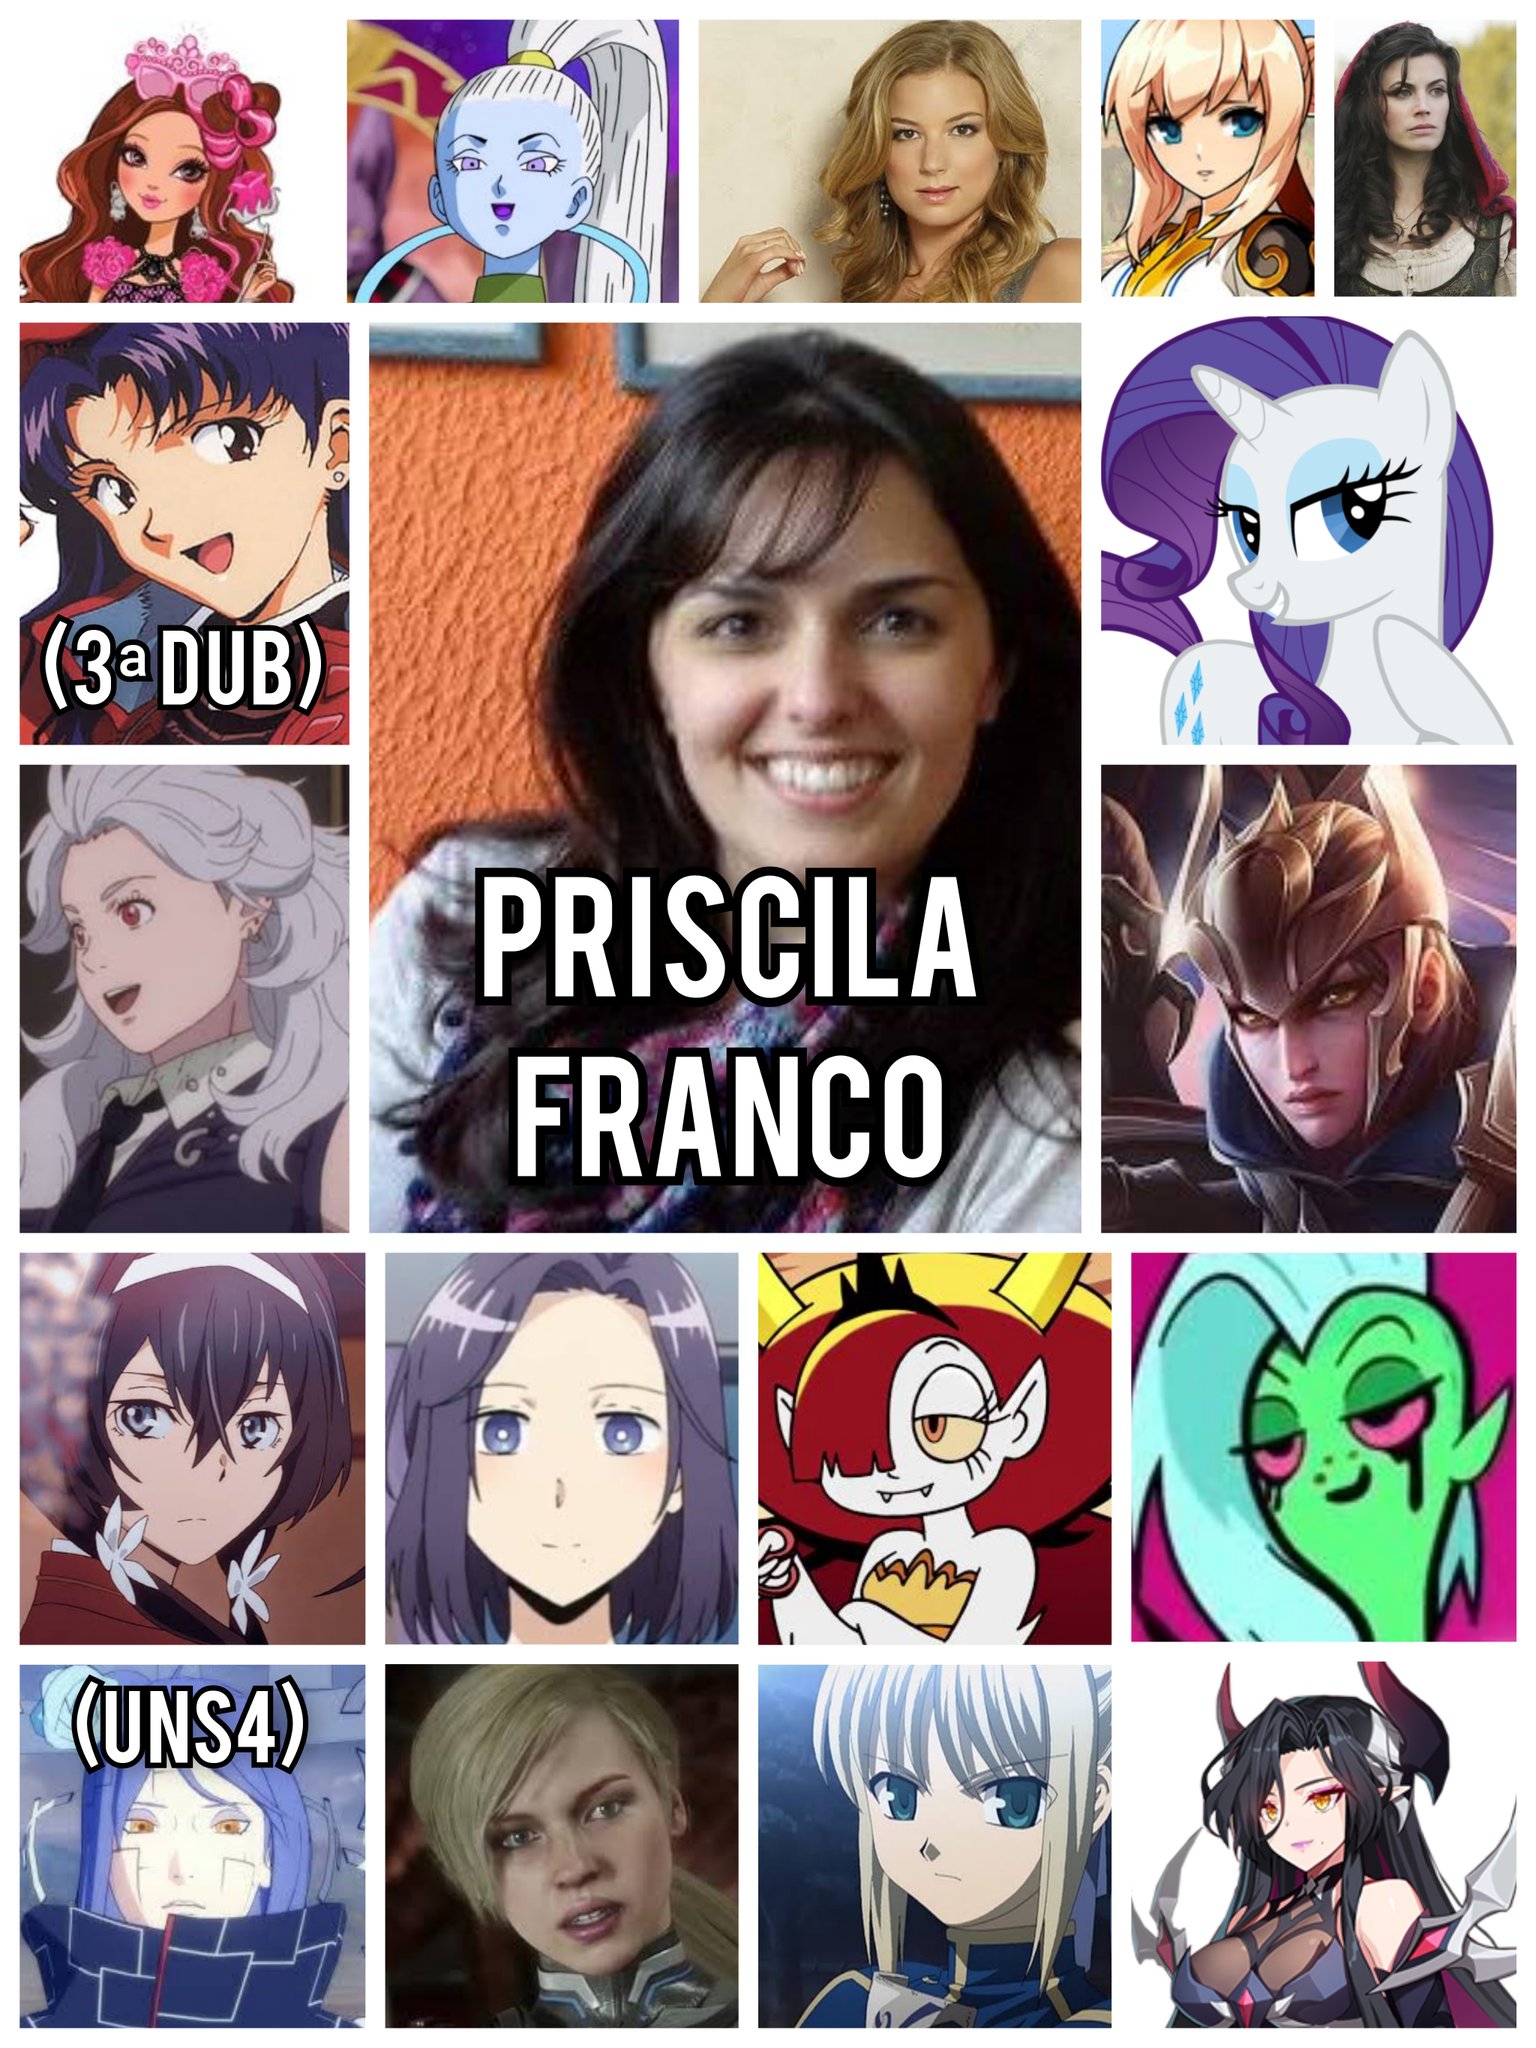 Priscila Franco nos Animes 